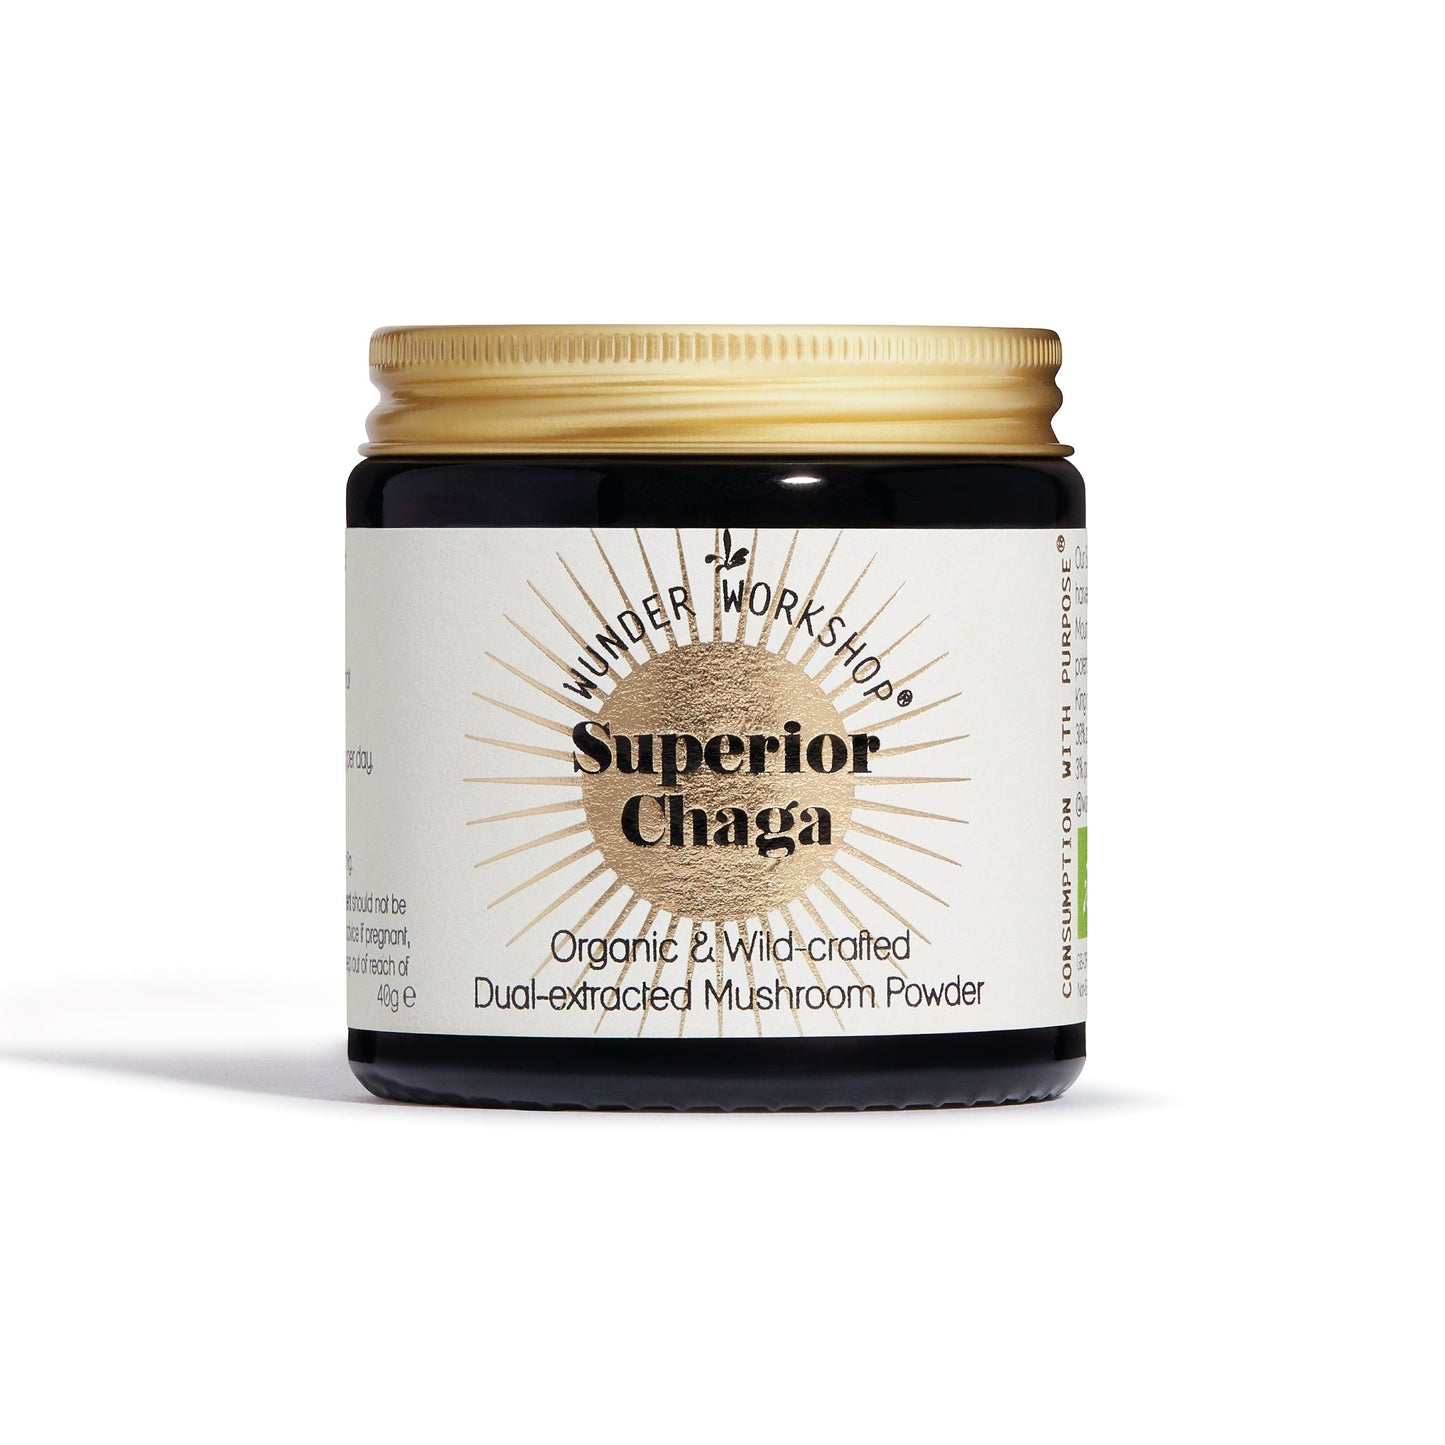 Superior Chaga – Wild hergestelltes, doppelt extrahiertes Pilzpulver